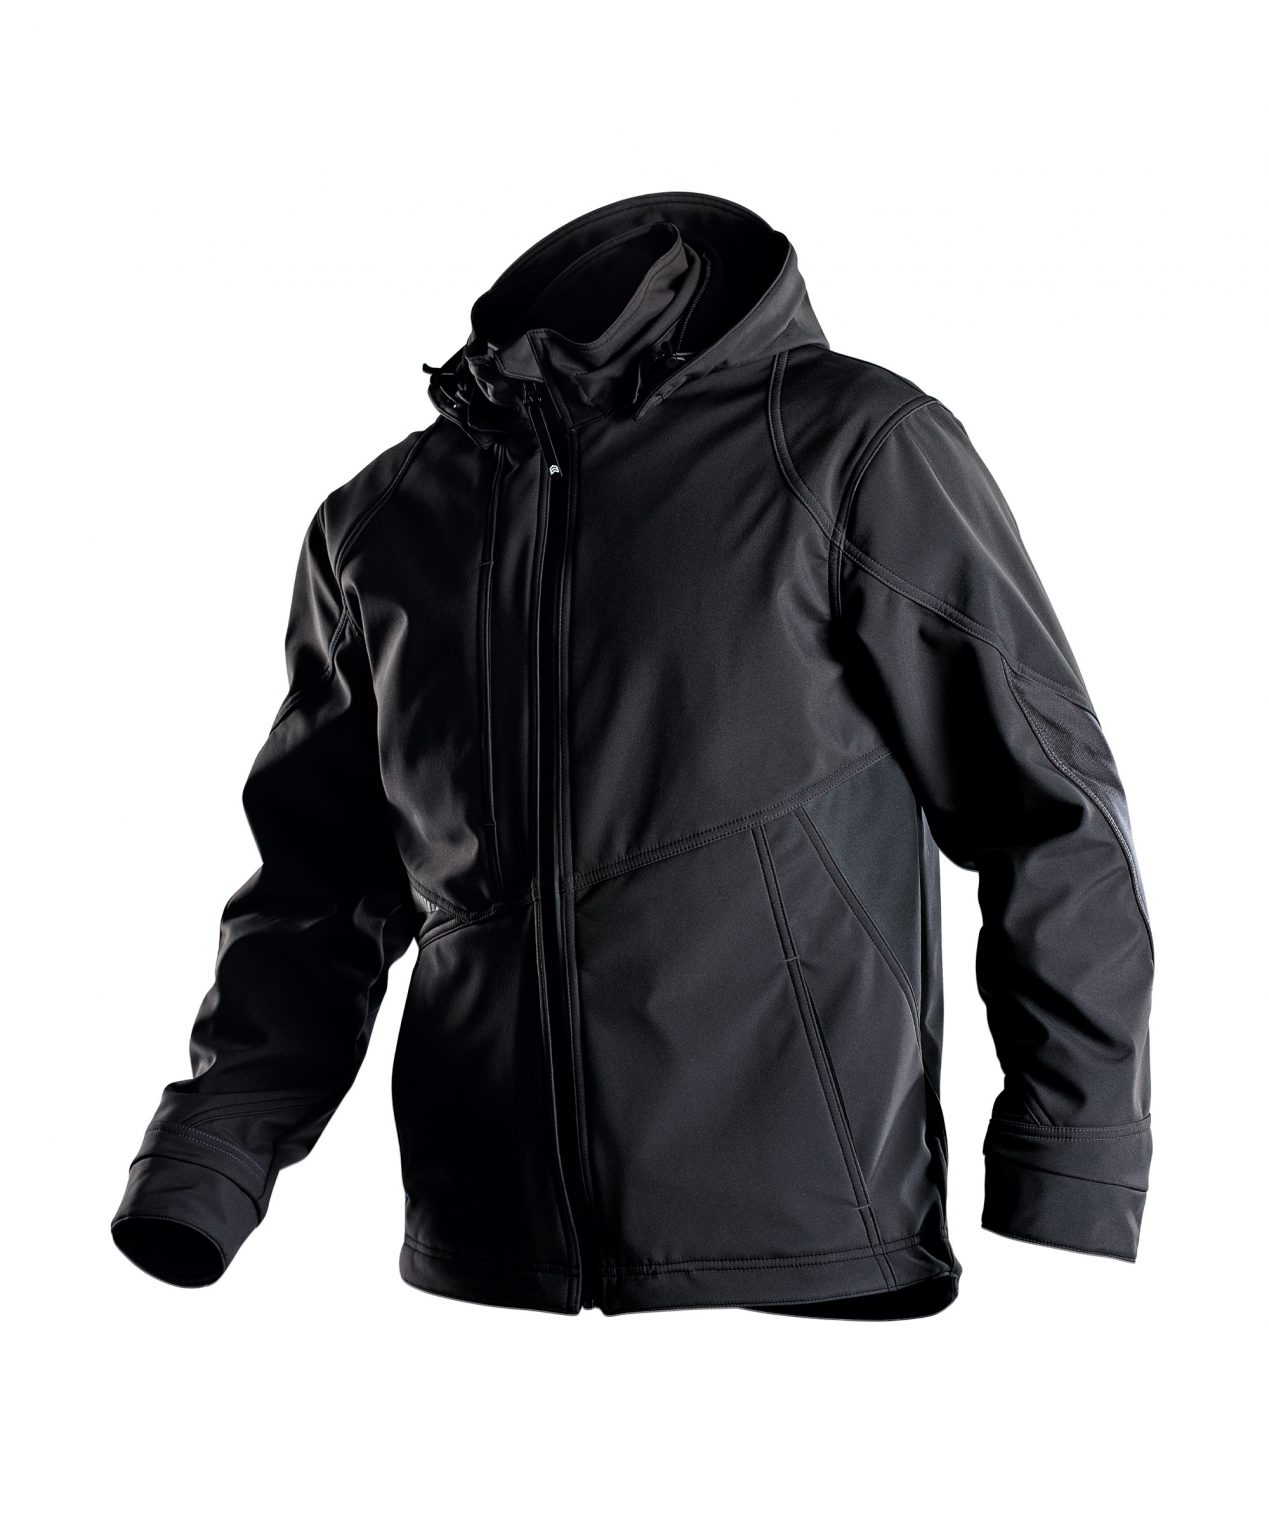 gravity softshell jacket black detail